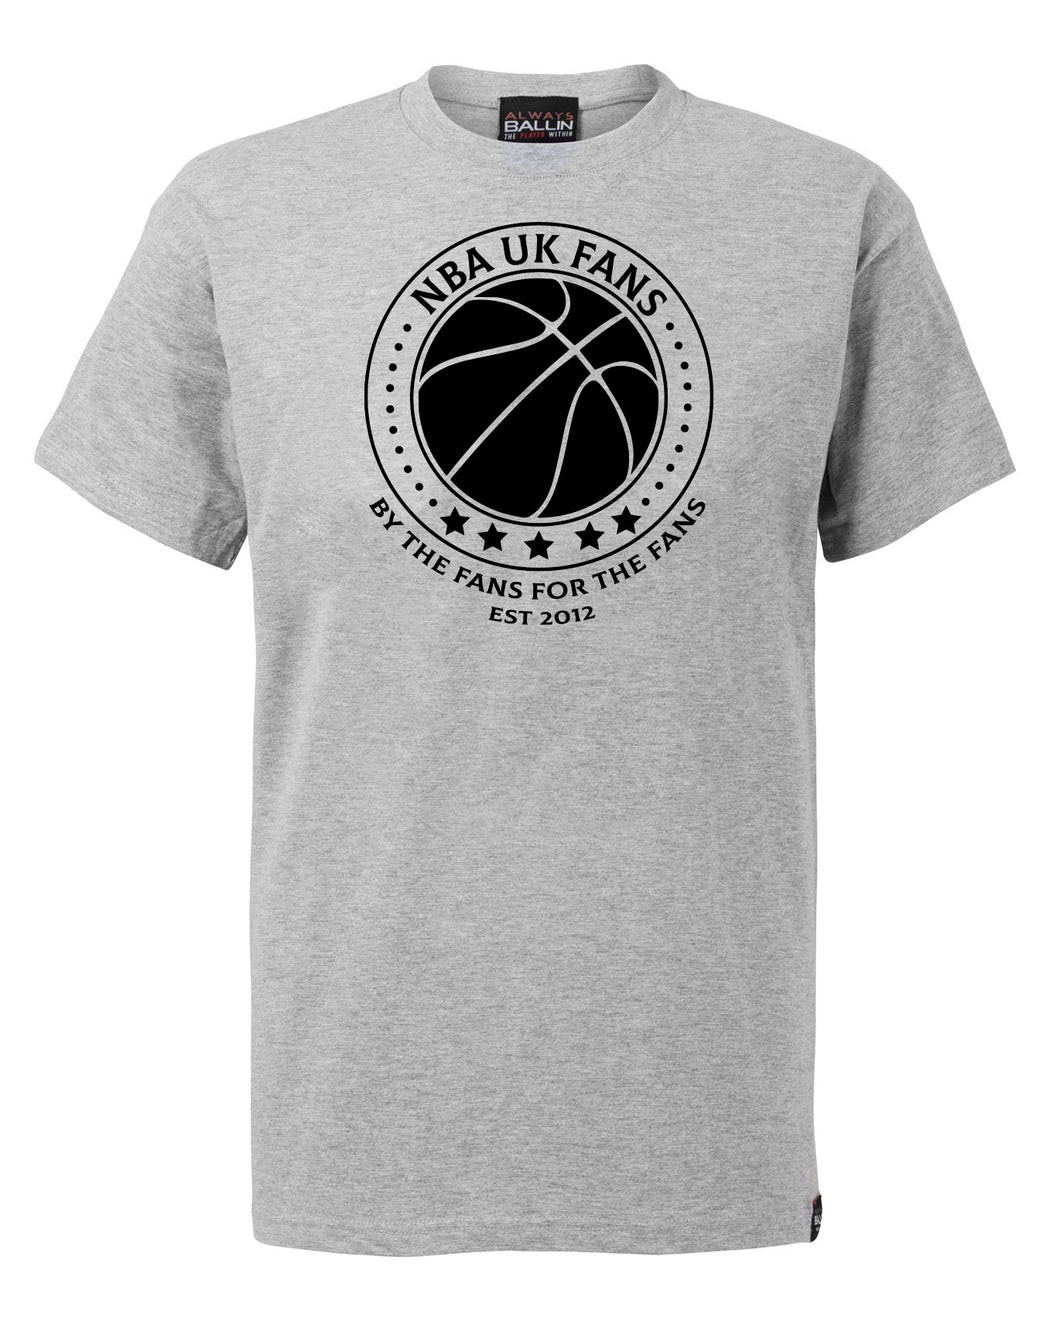 NBA UK Fans Logo Sport Grey T-Shirt